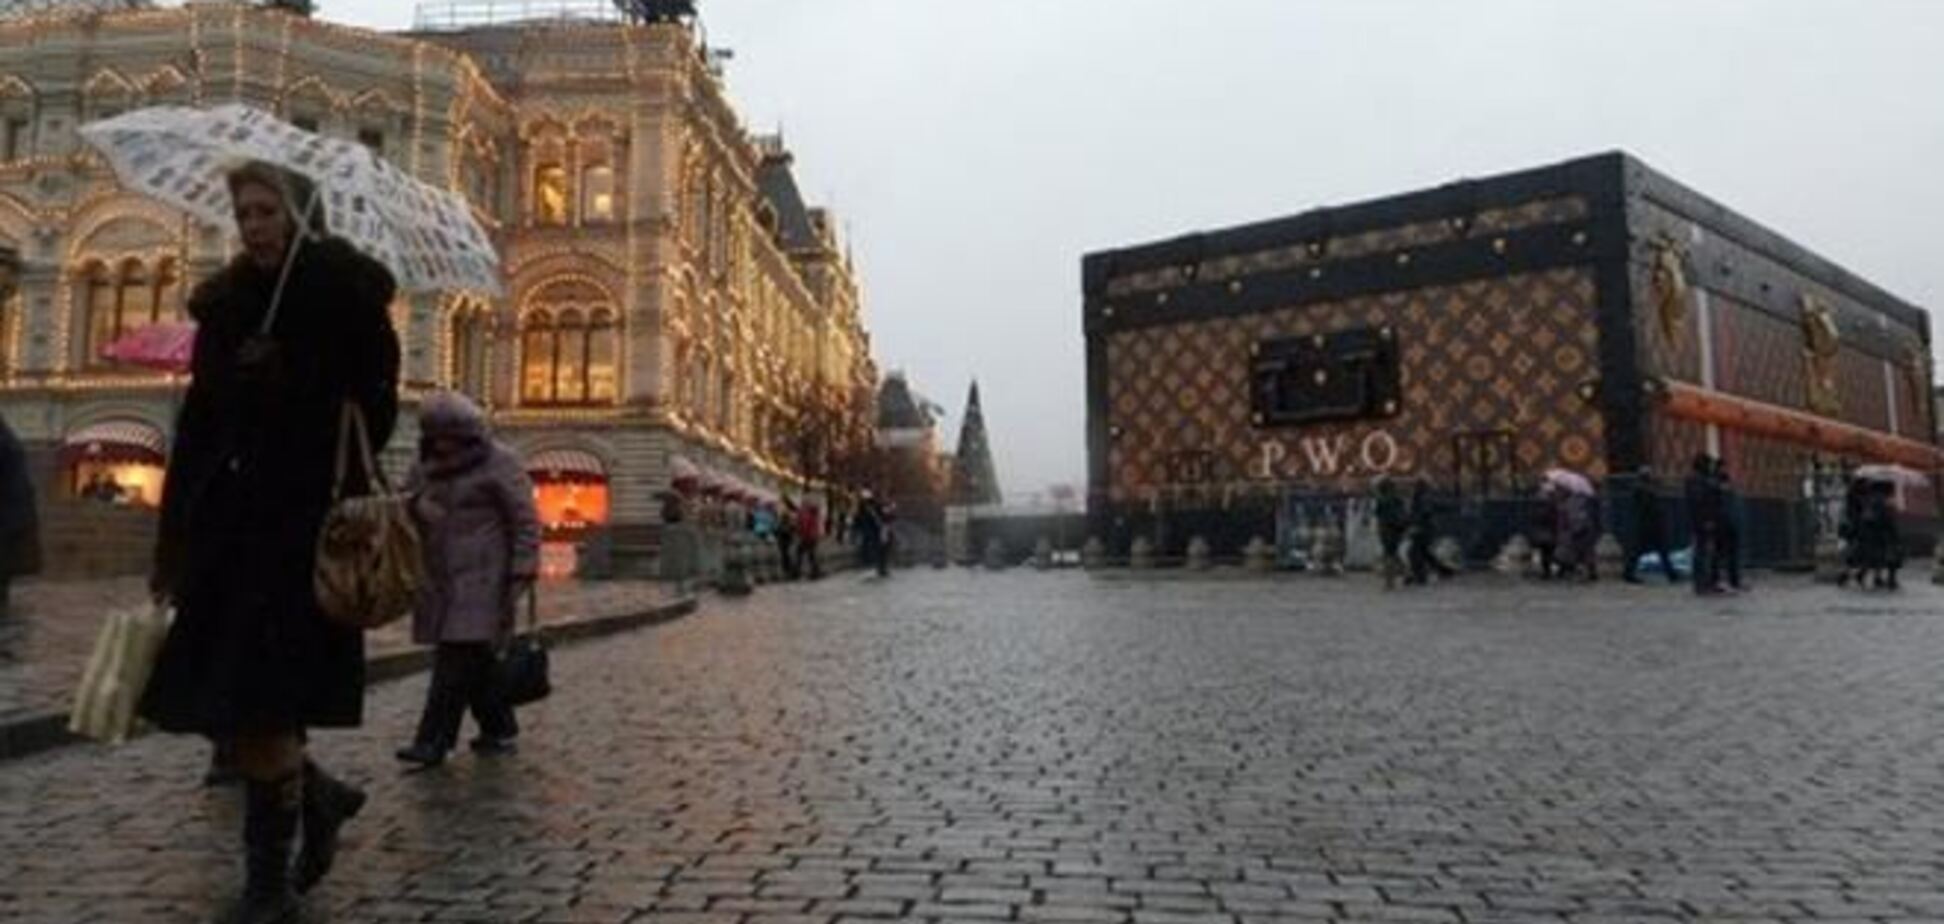 Чемодан Louis Vuitton на Красной площади в Москве вызвал интерес туристов 